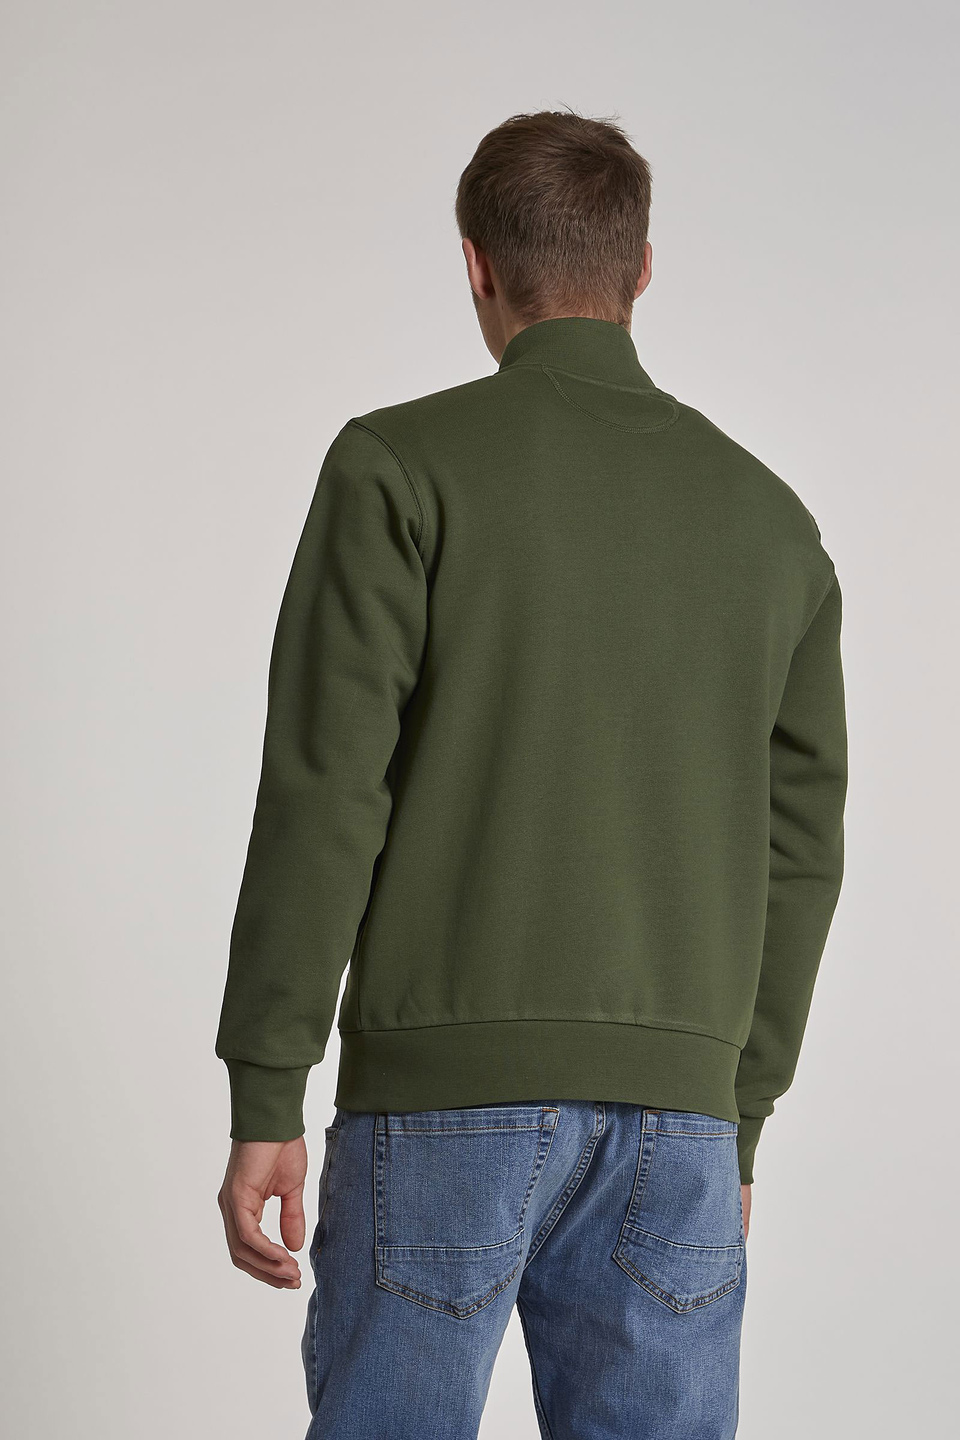 Herren-Sweatshirt aus Baumwolle mit hohem Kragen und Reißverschluss im Regular Fit - La Martina - Official Online Shop